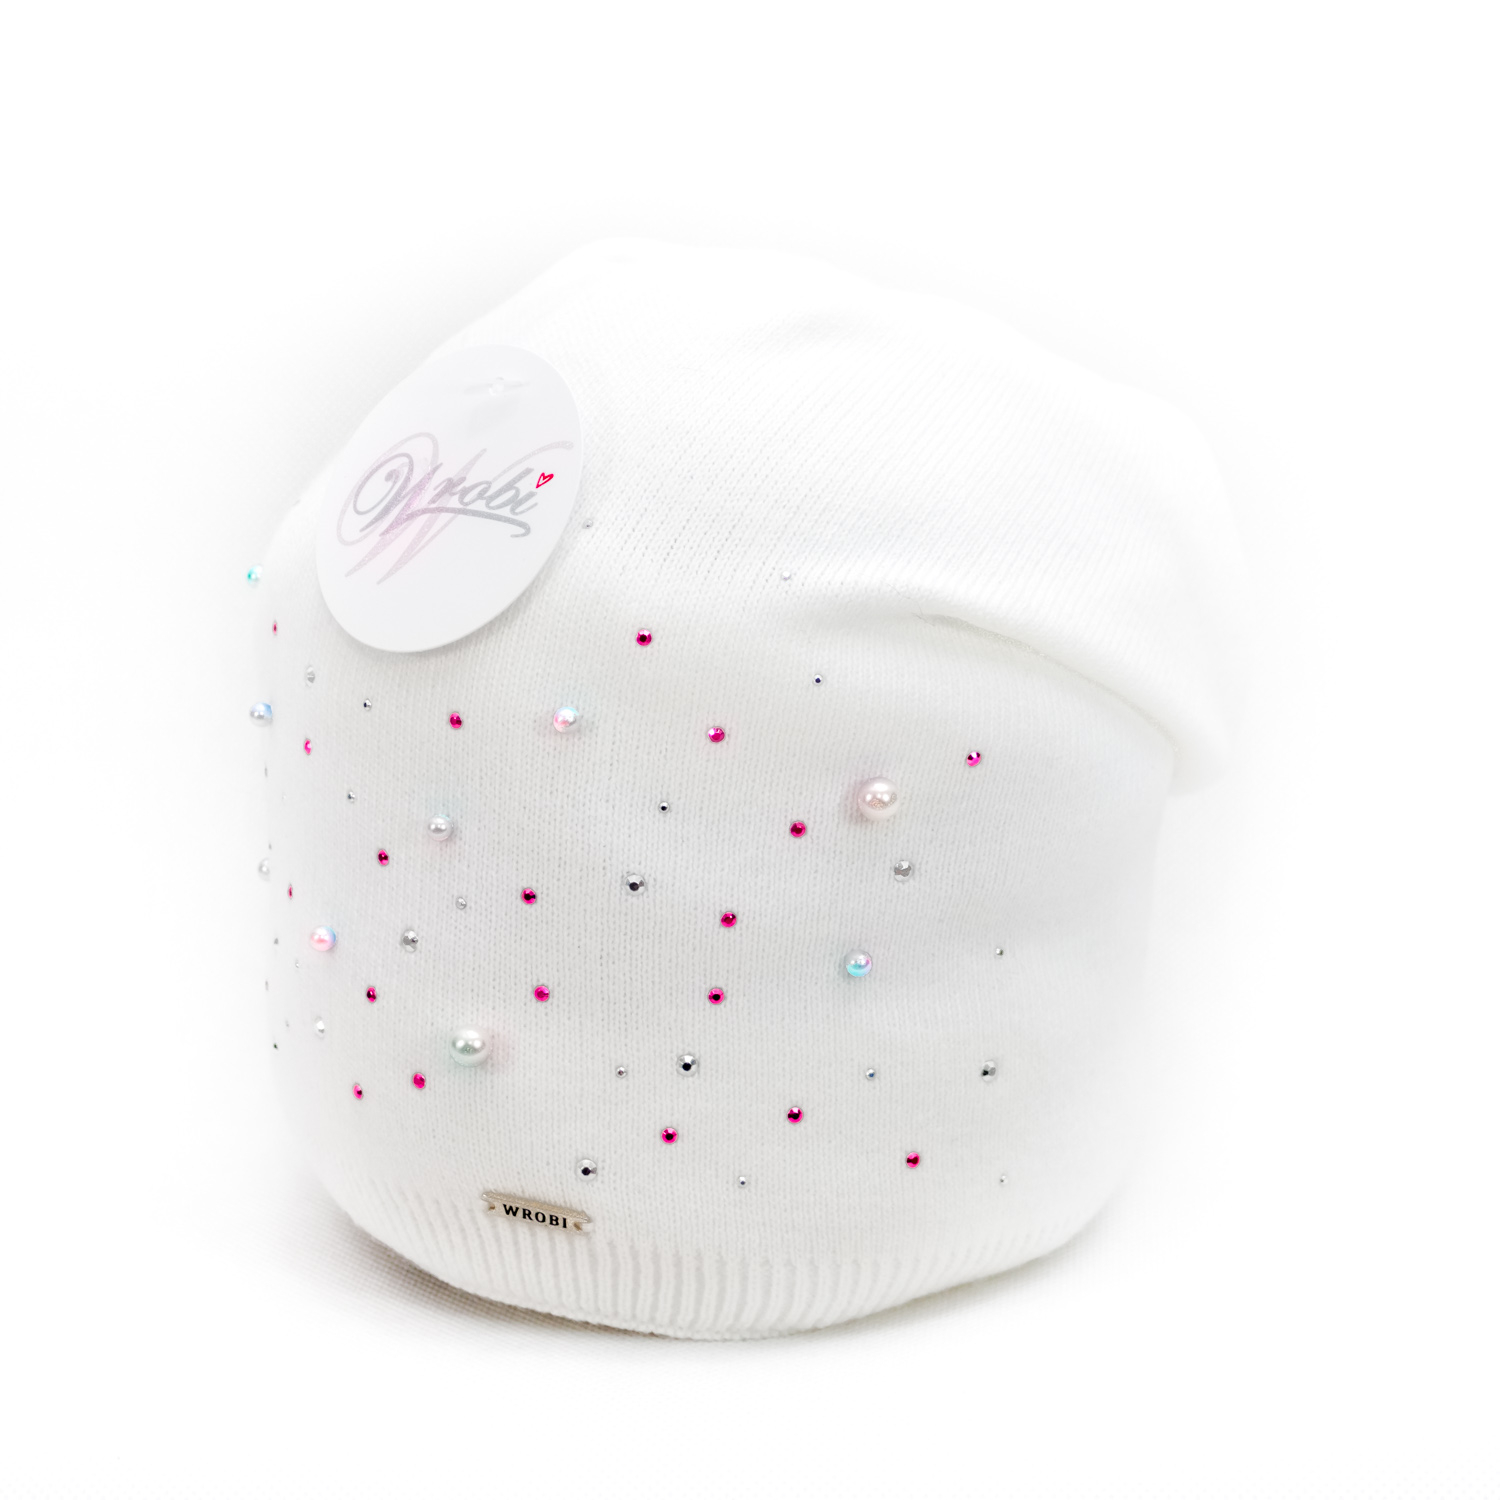 Dámská módní čepice Wrobi - bílá s barevnými korálky